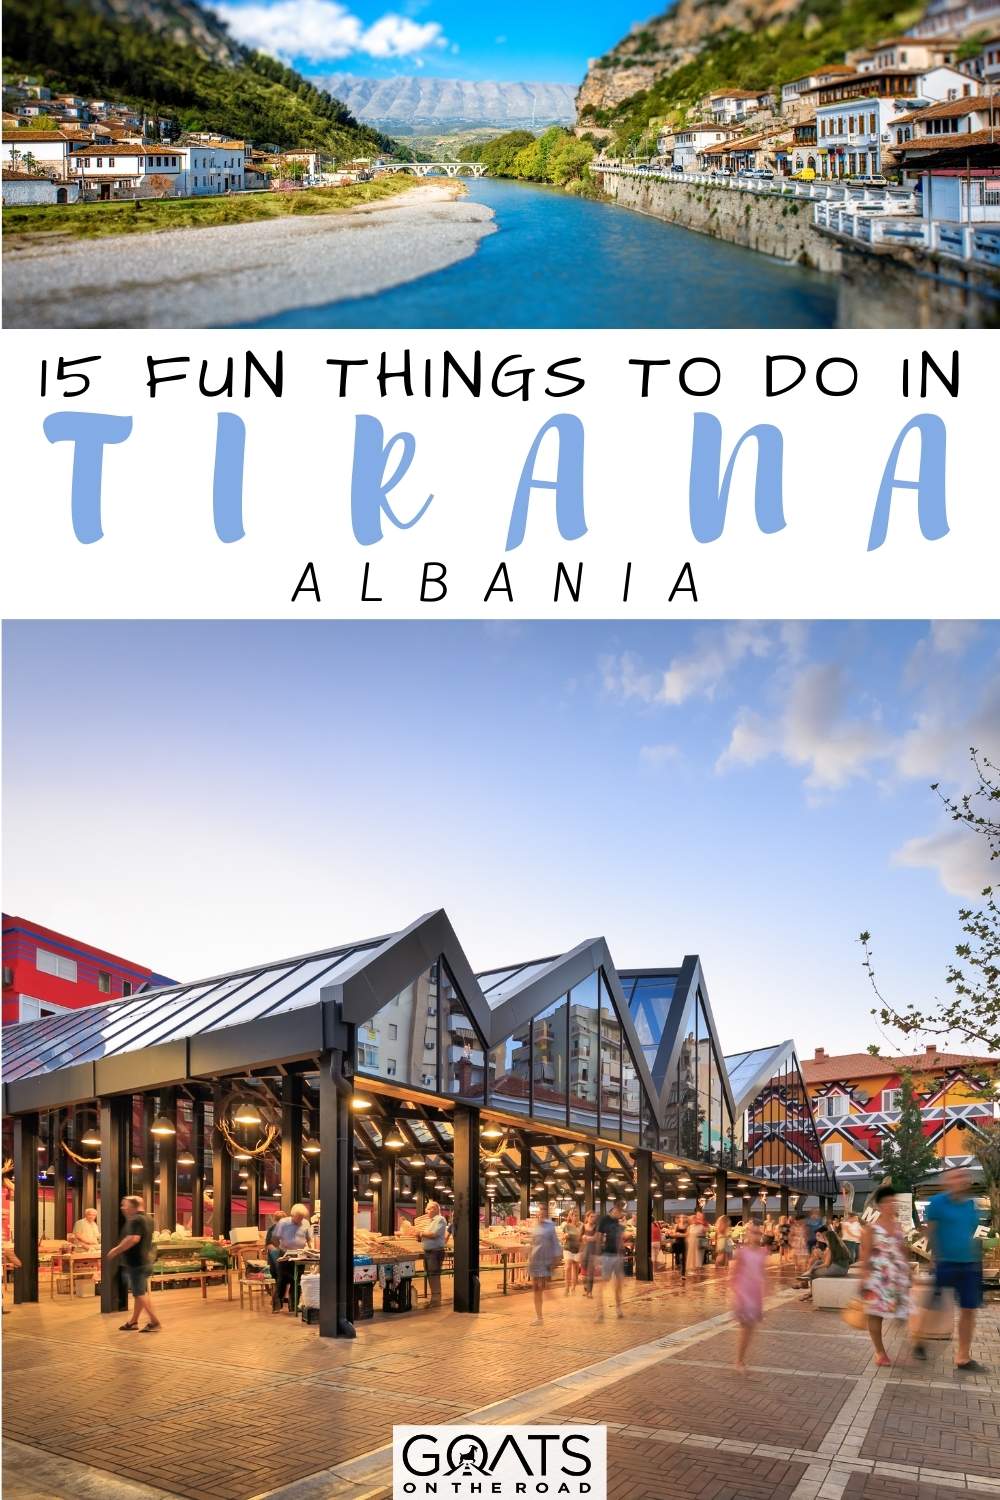 “15 Fun Things To Do in Tirana, Albania